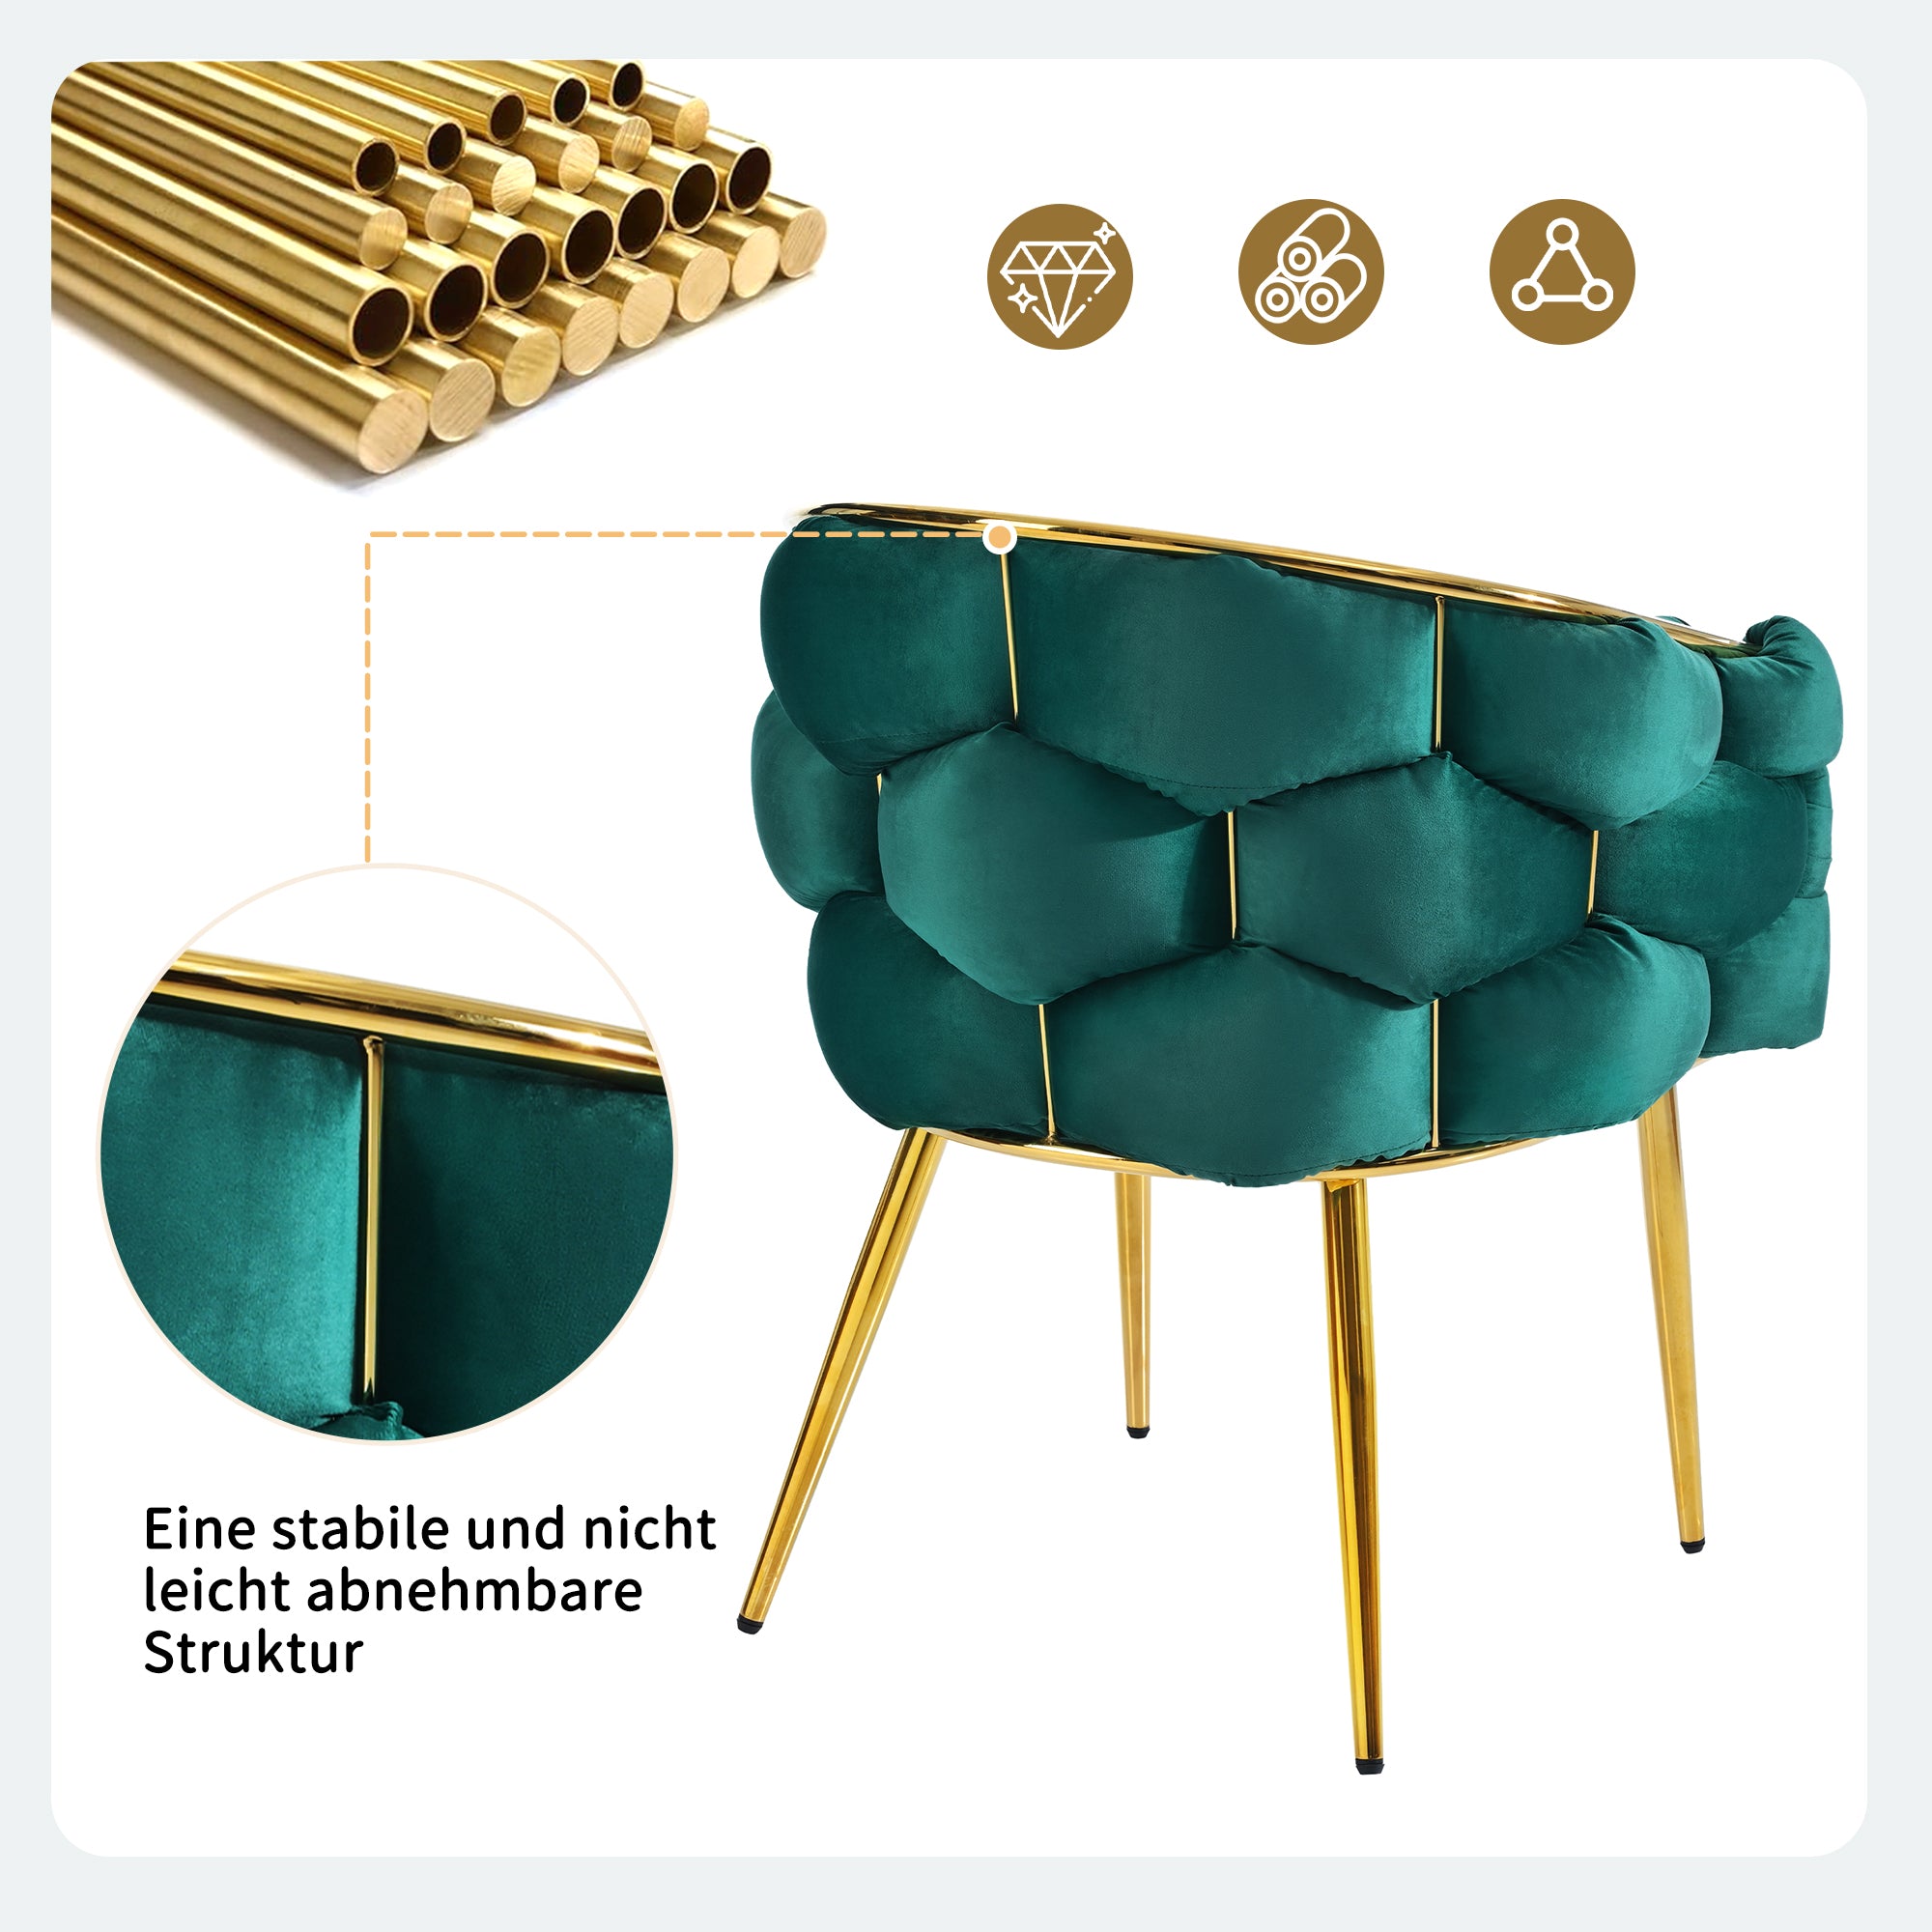 1 okwish Luxus-Samtstuhl (je 1 Satz Wohnzimmerstuhl, Esszimmerstuhl, Make-up-Stuhl, moderner Modestuhl), vergoldete Eisenbeine, grüner Stuhl, Bubble-Stuhl